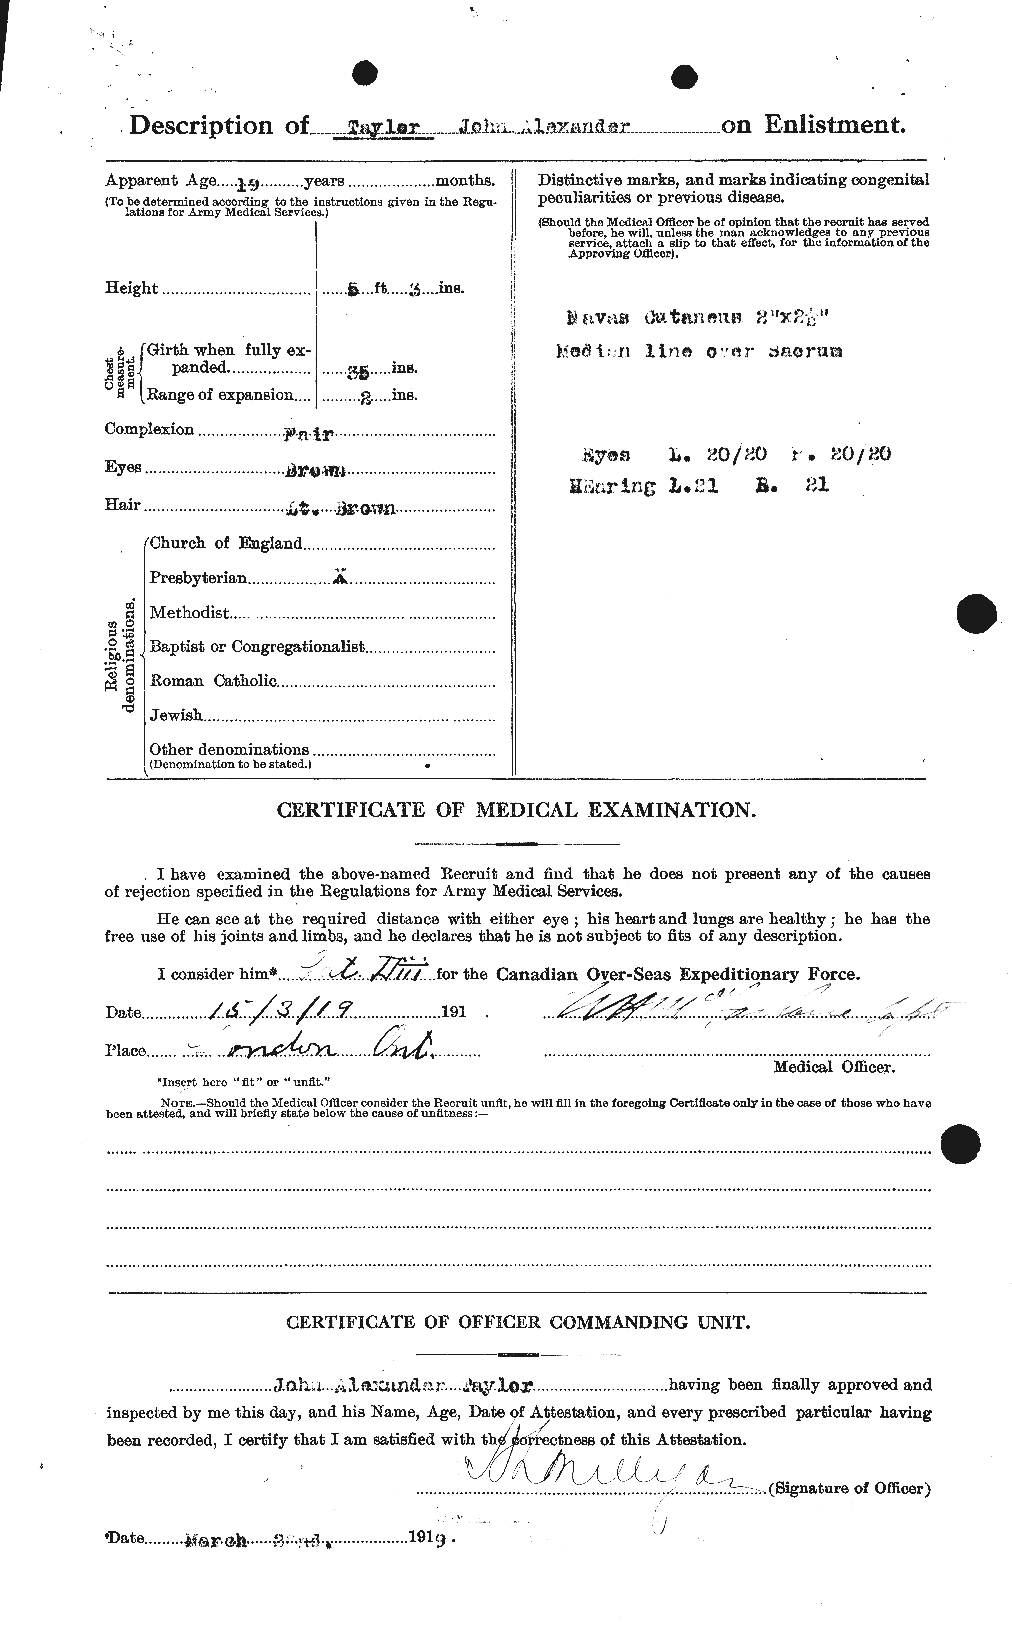 Dossiers du Personnel de la Première Guerre mondiale - CEC 627041b